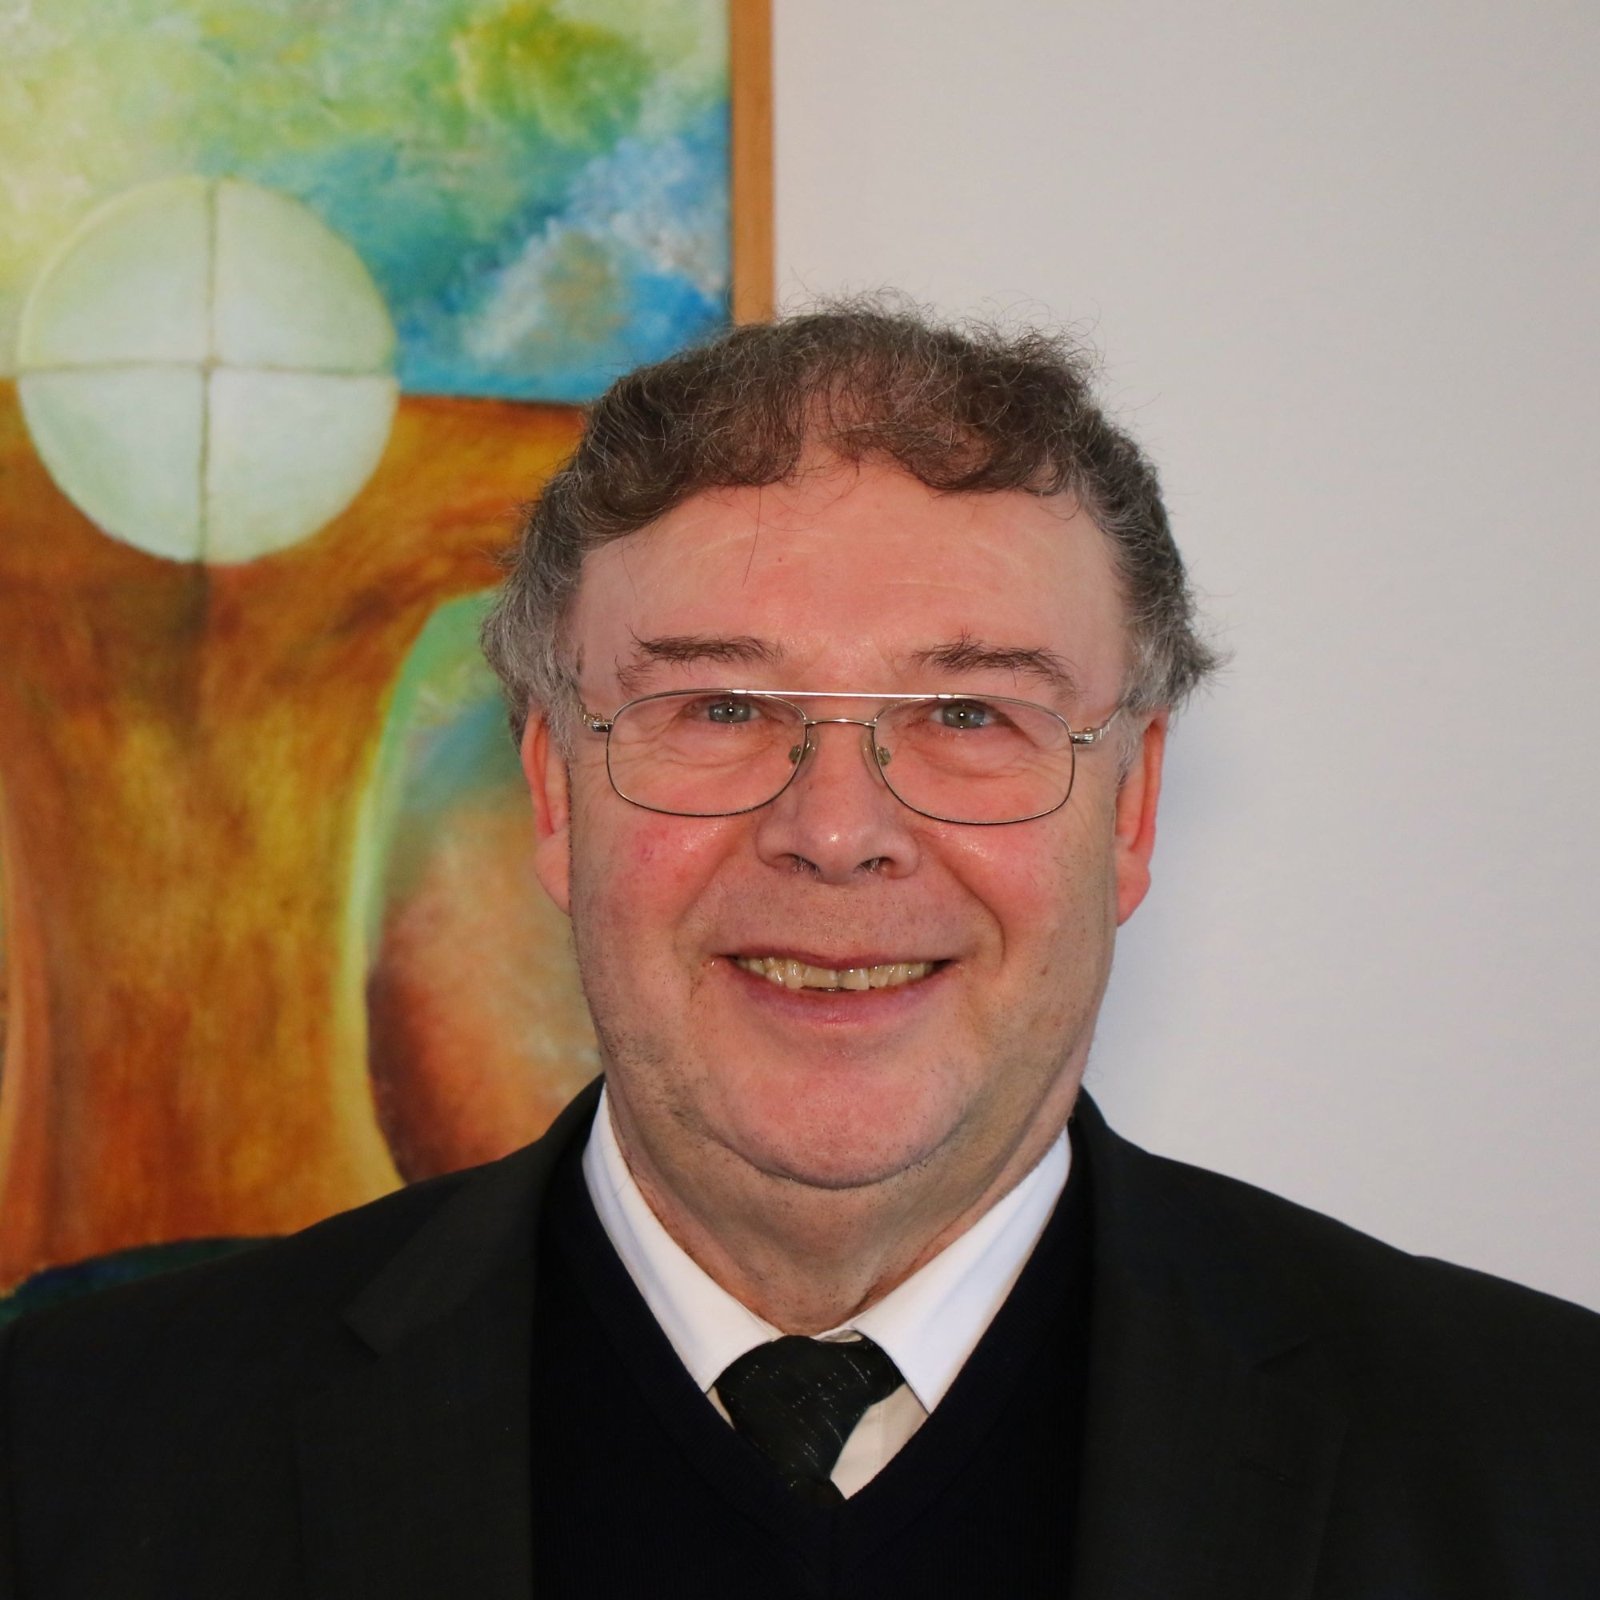 Pfarrer Klaus-Peter Jansen (c) Markus Brandt